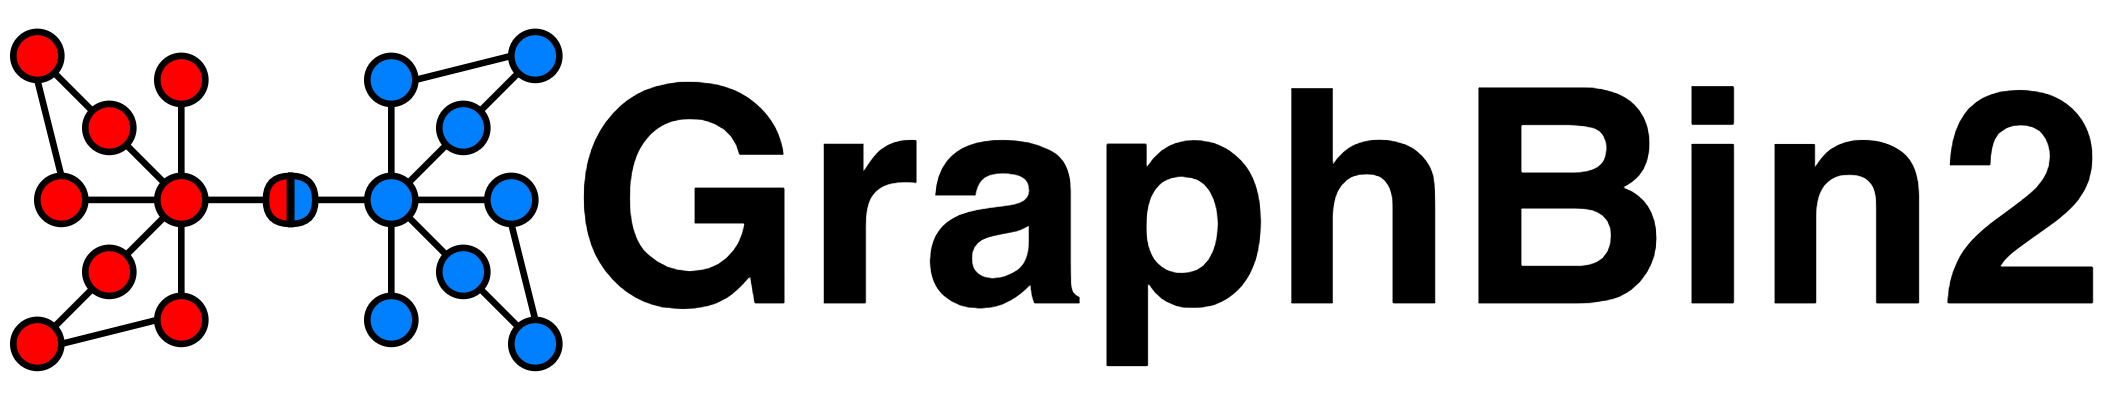 GraphBin2 Logo